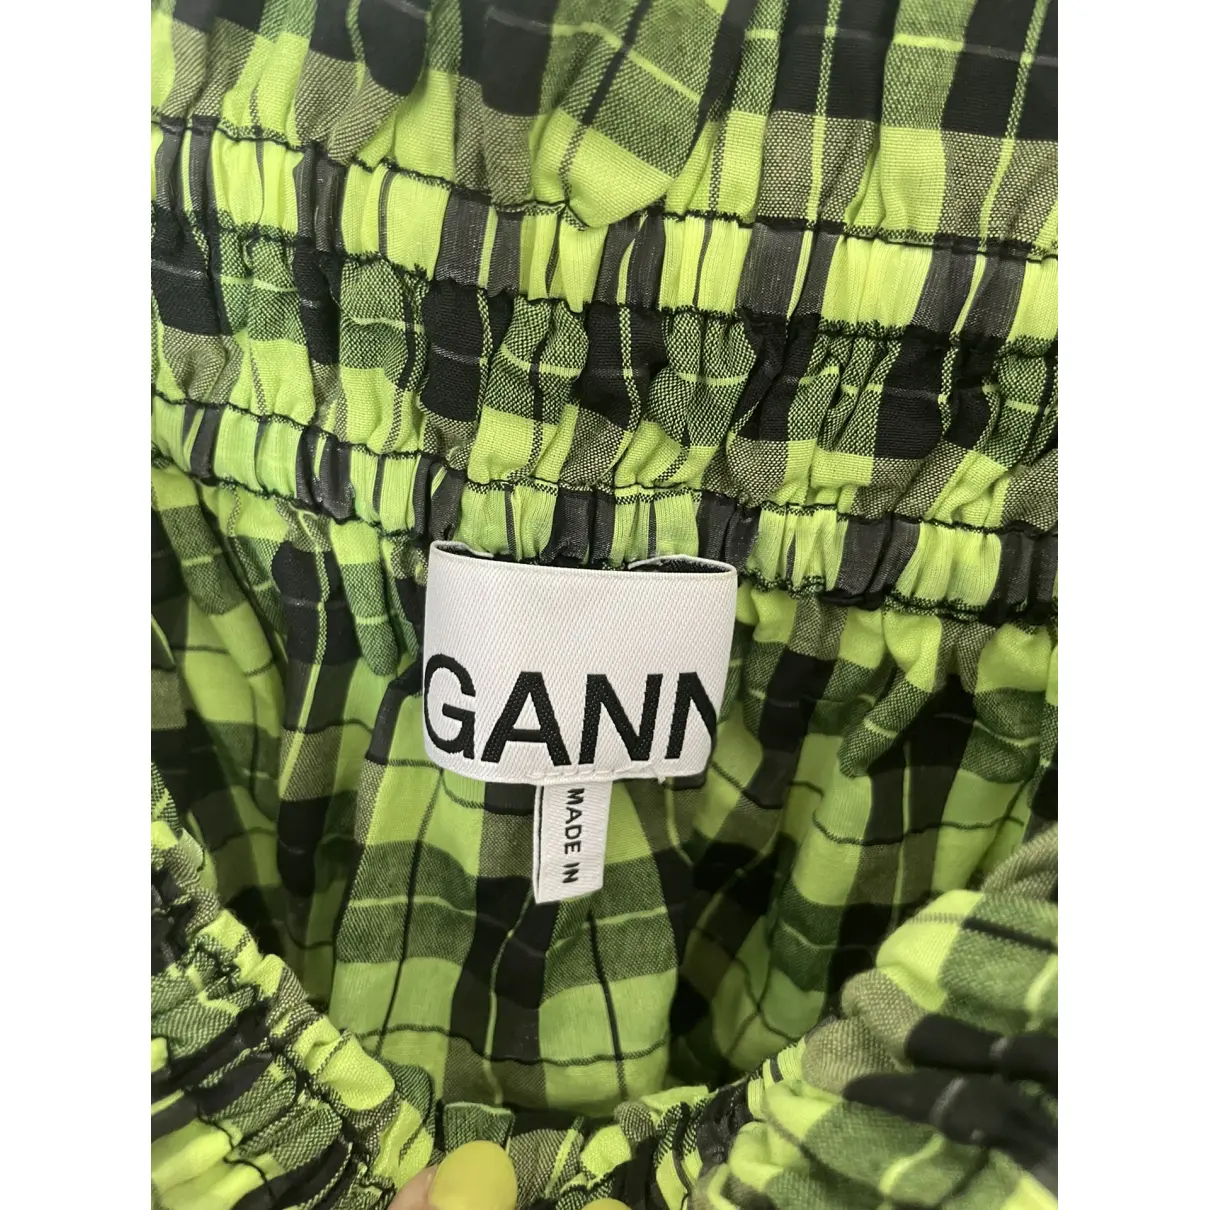 Buy Ganni Silk camisole online